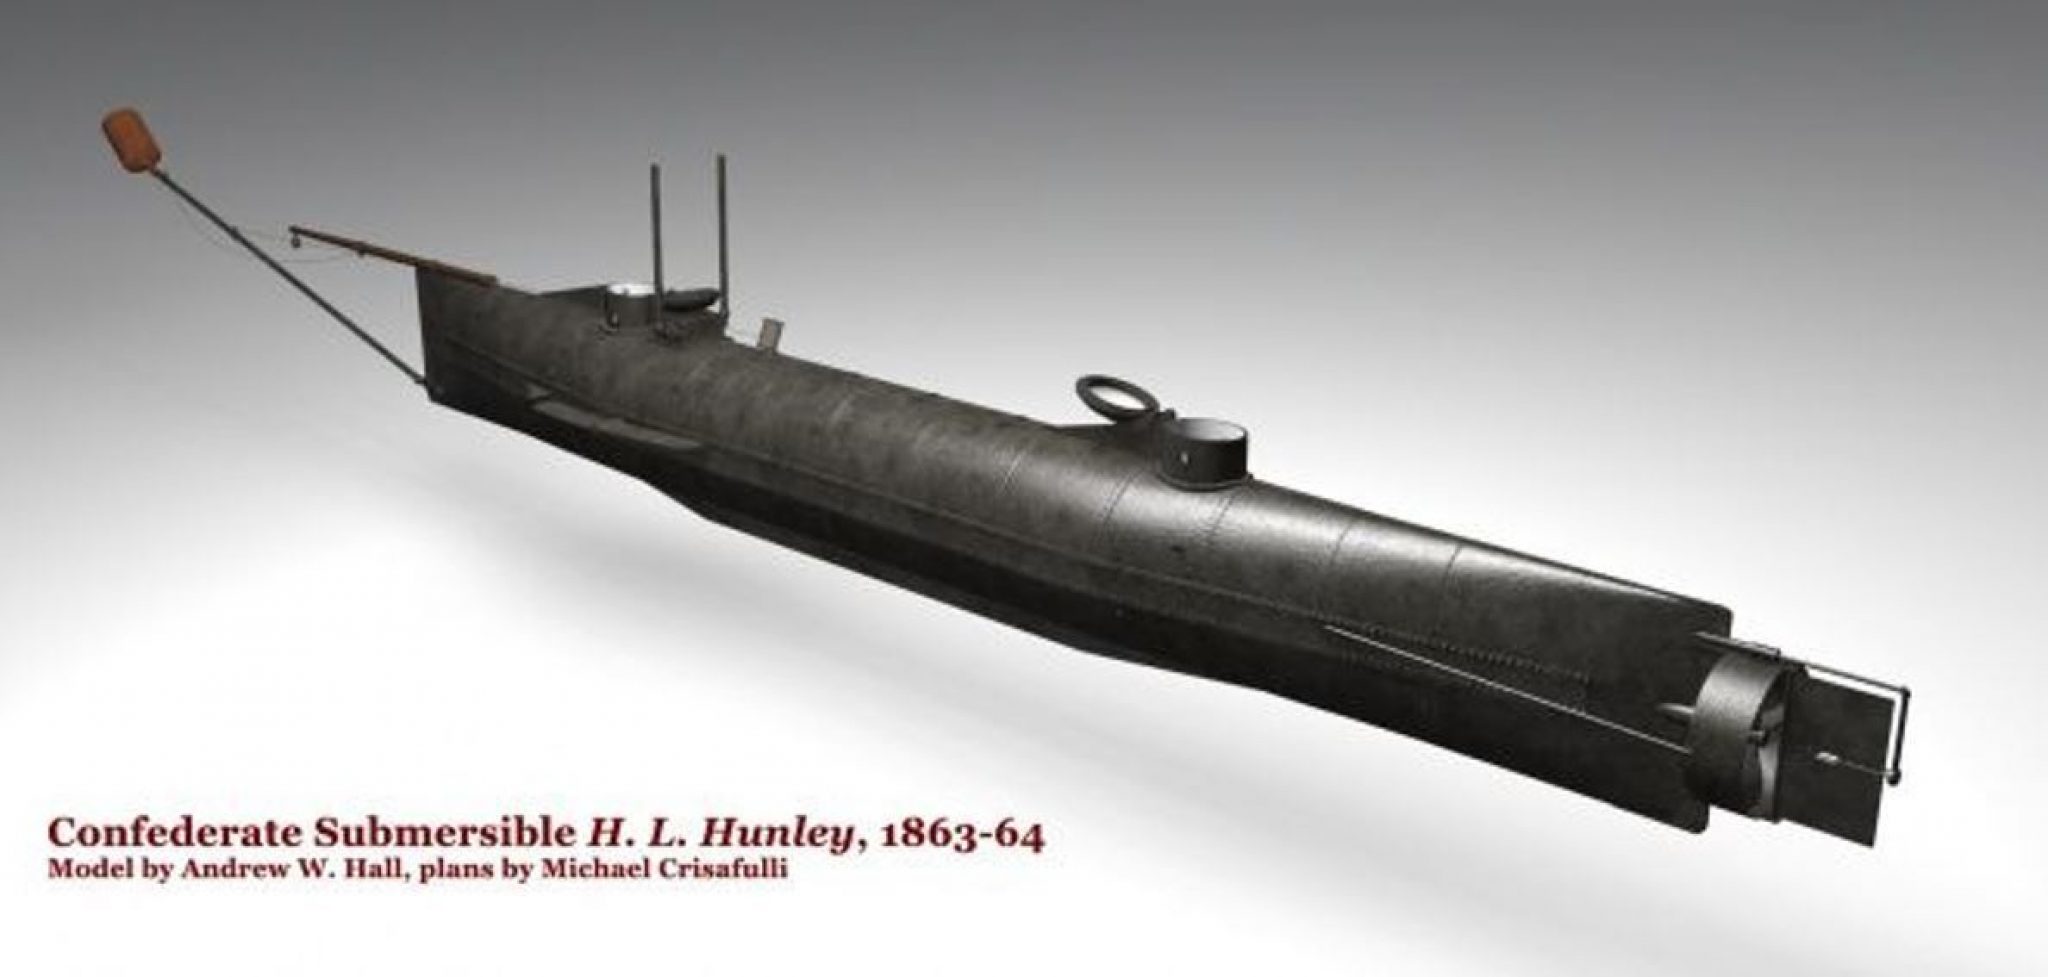 Говоря о работах конструктора Норденфельда для флота, обычно вспоминают его подводную лодку Реже вспоминают его орудия, нашедшие большее применение